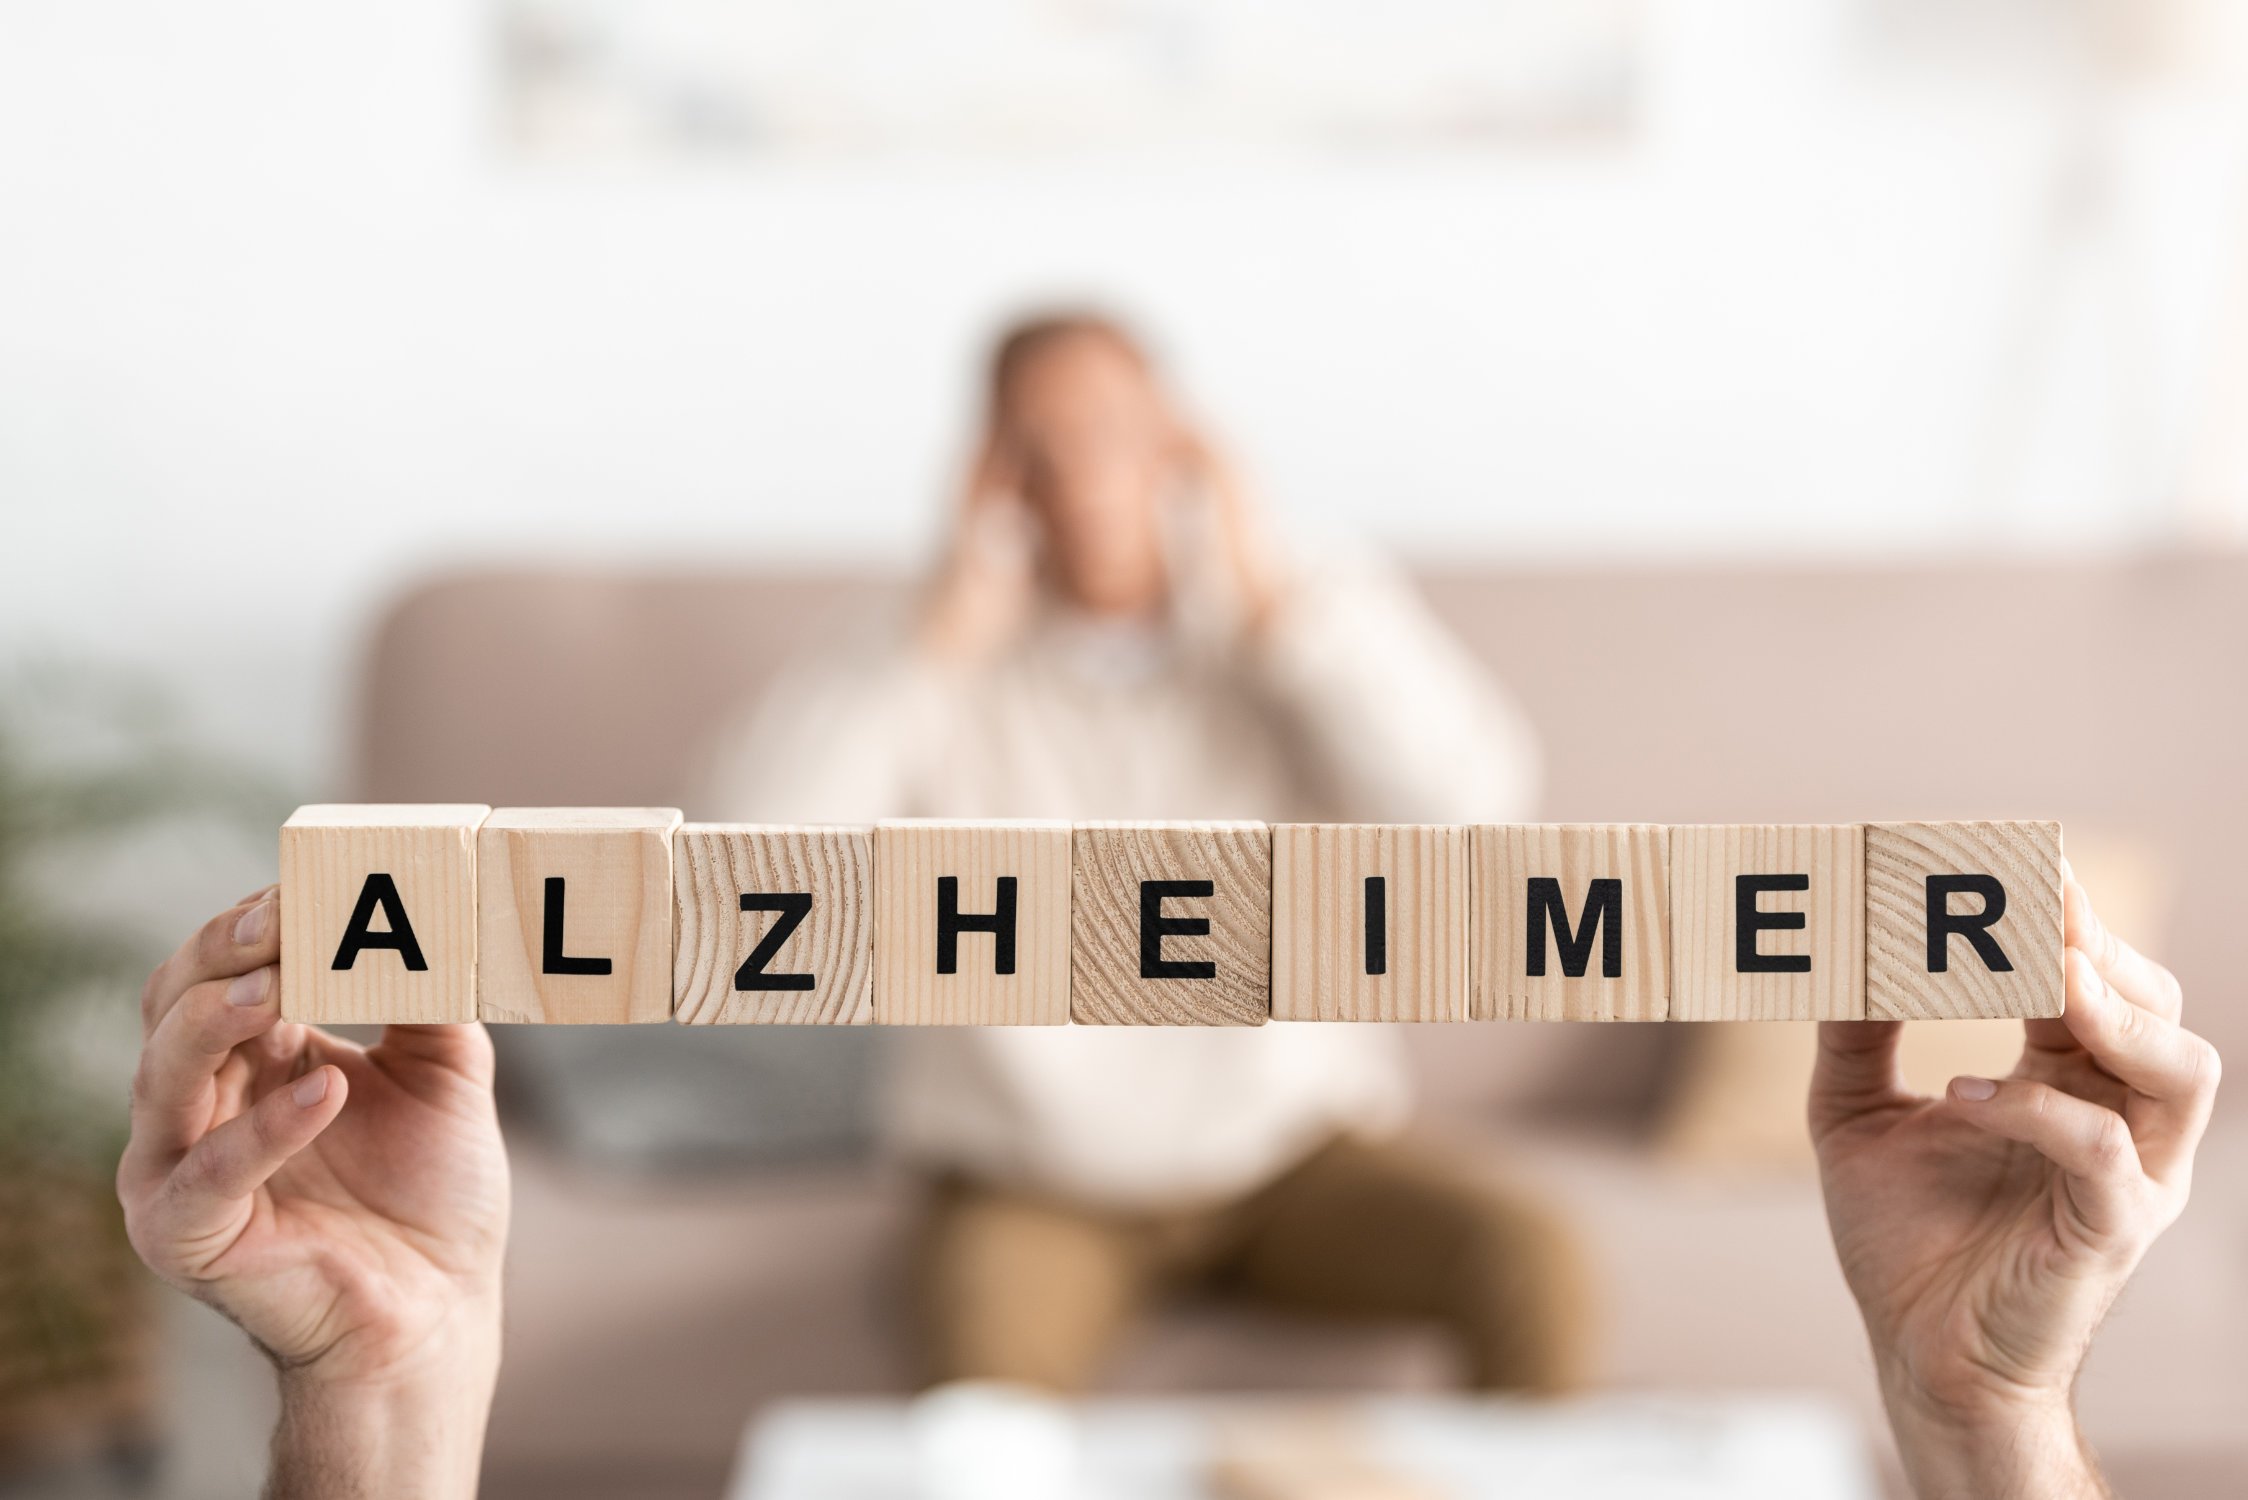 Alzheimerâs disease affect more often women than men